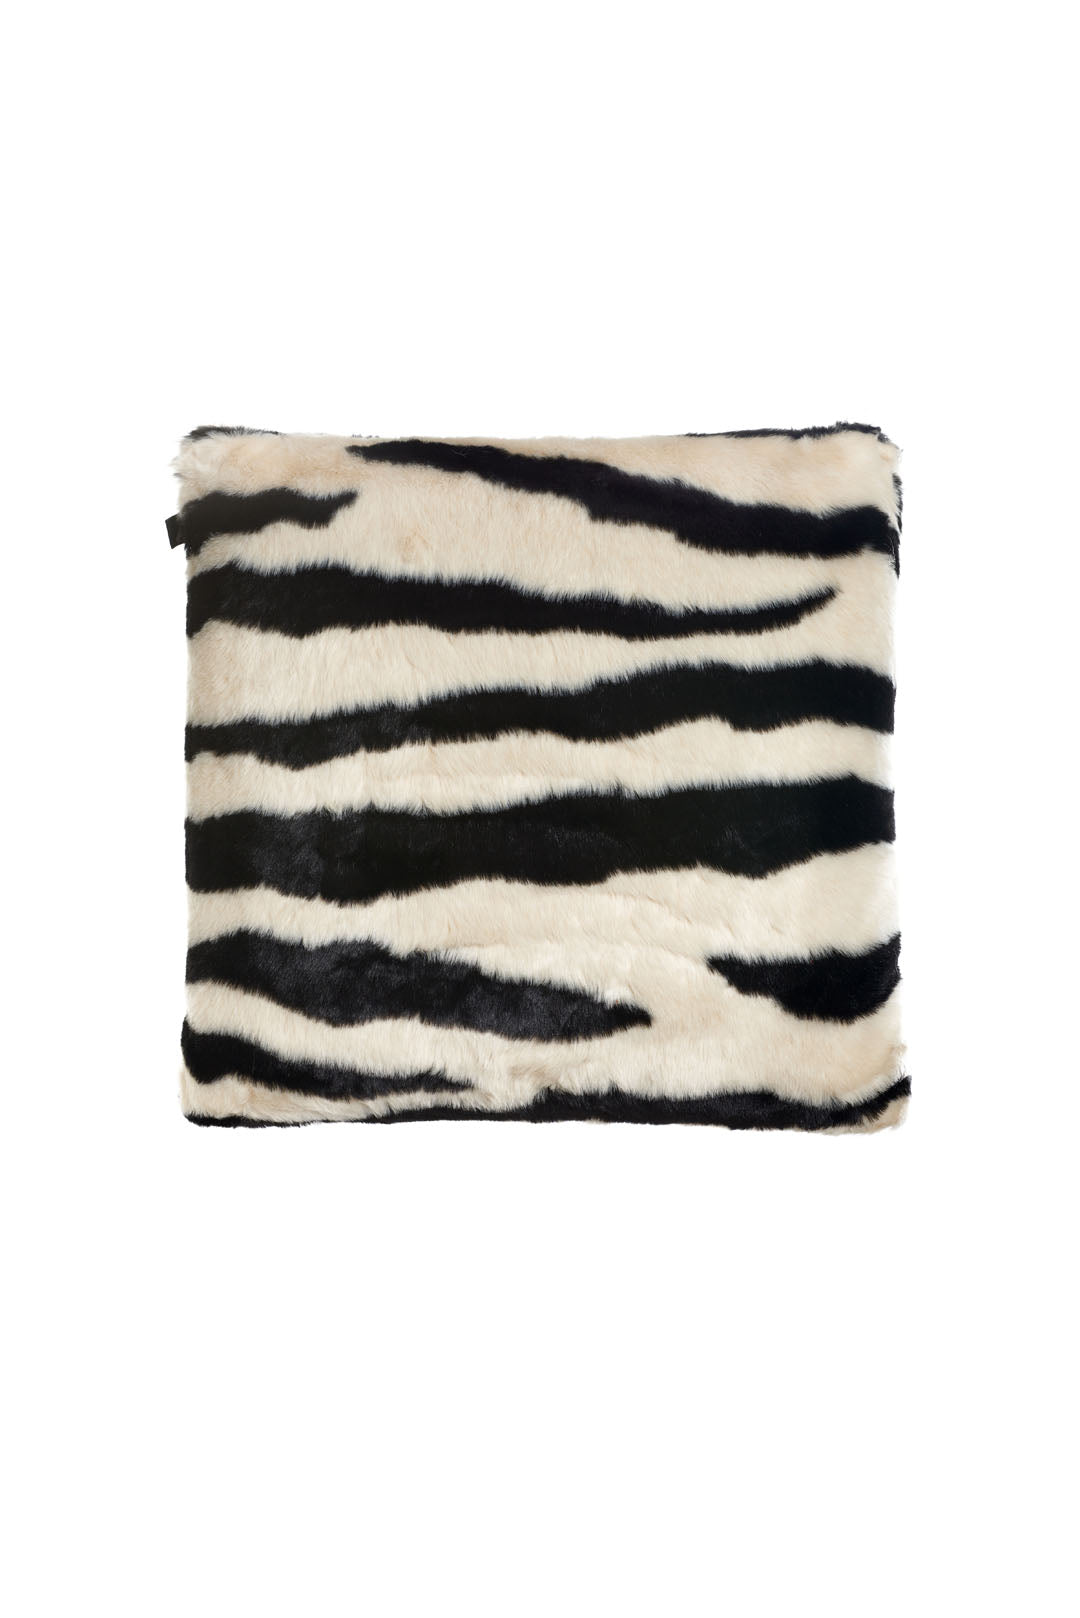 Zebra Faux Fur Pillow | Signature Collection